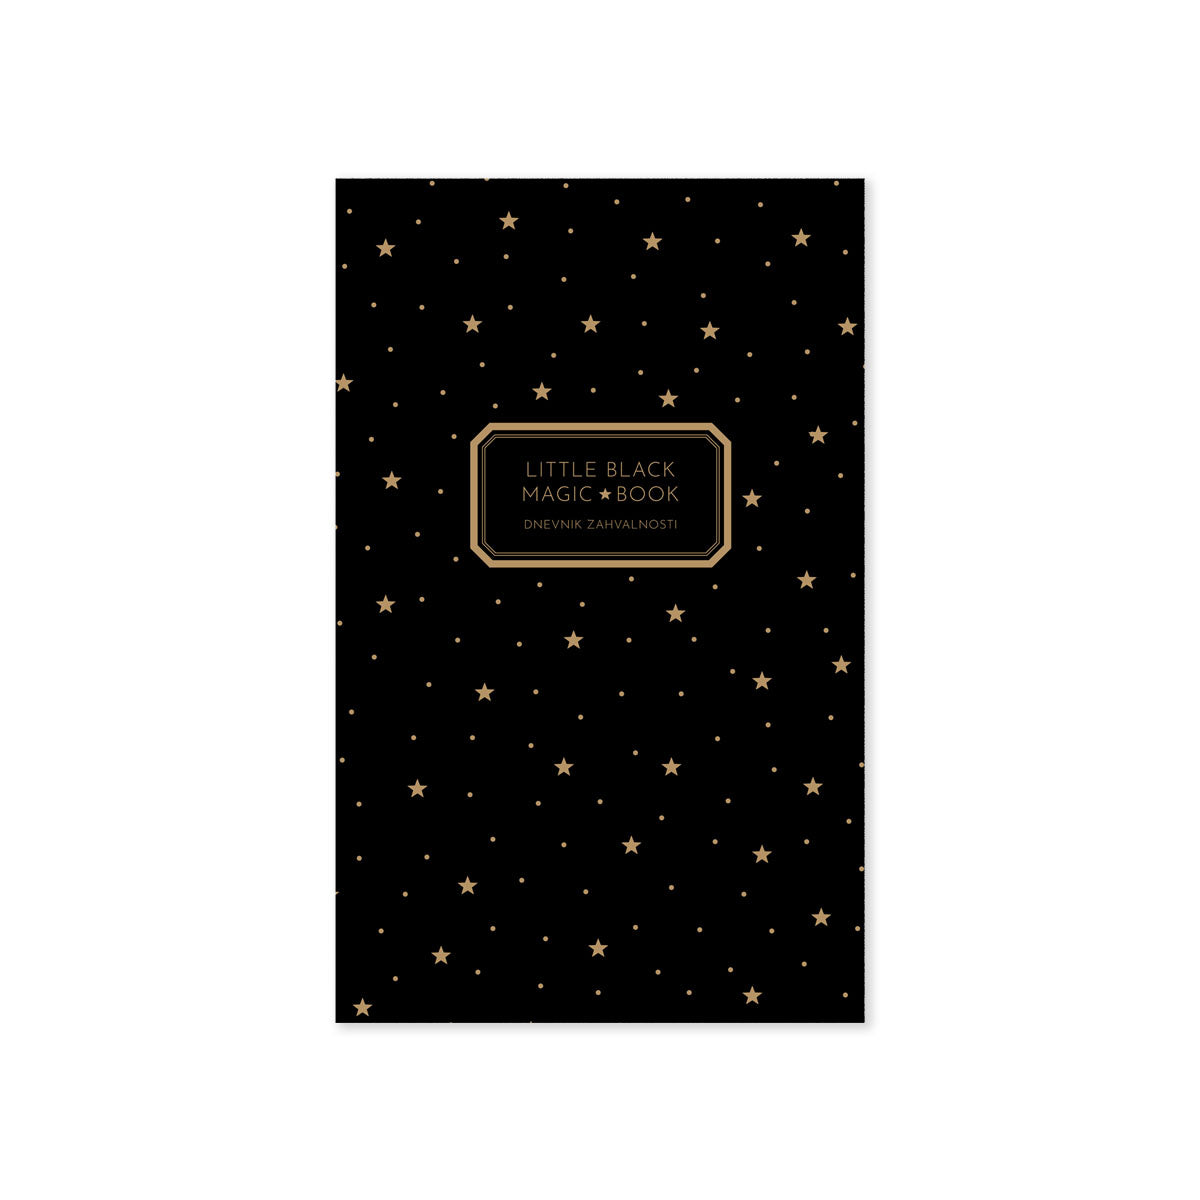 Dnevnik zahvalnosti - Little black magic book, crne korice sa zlatnim zvjezdicama